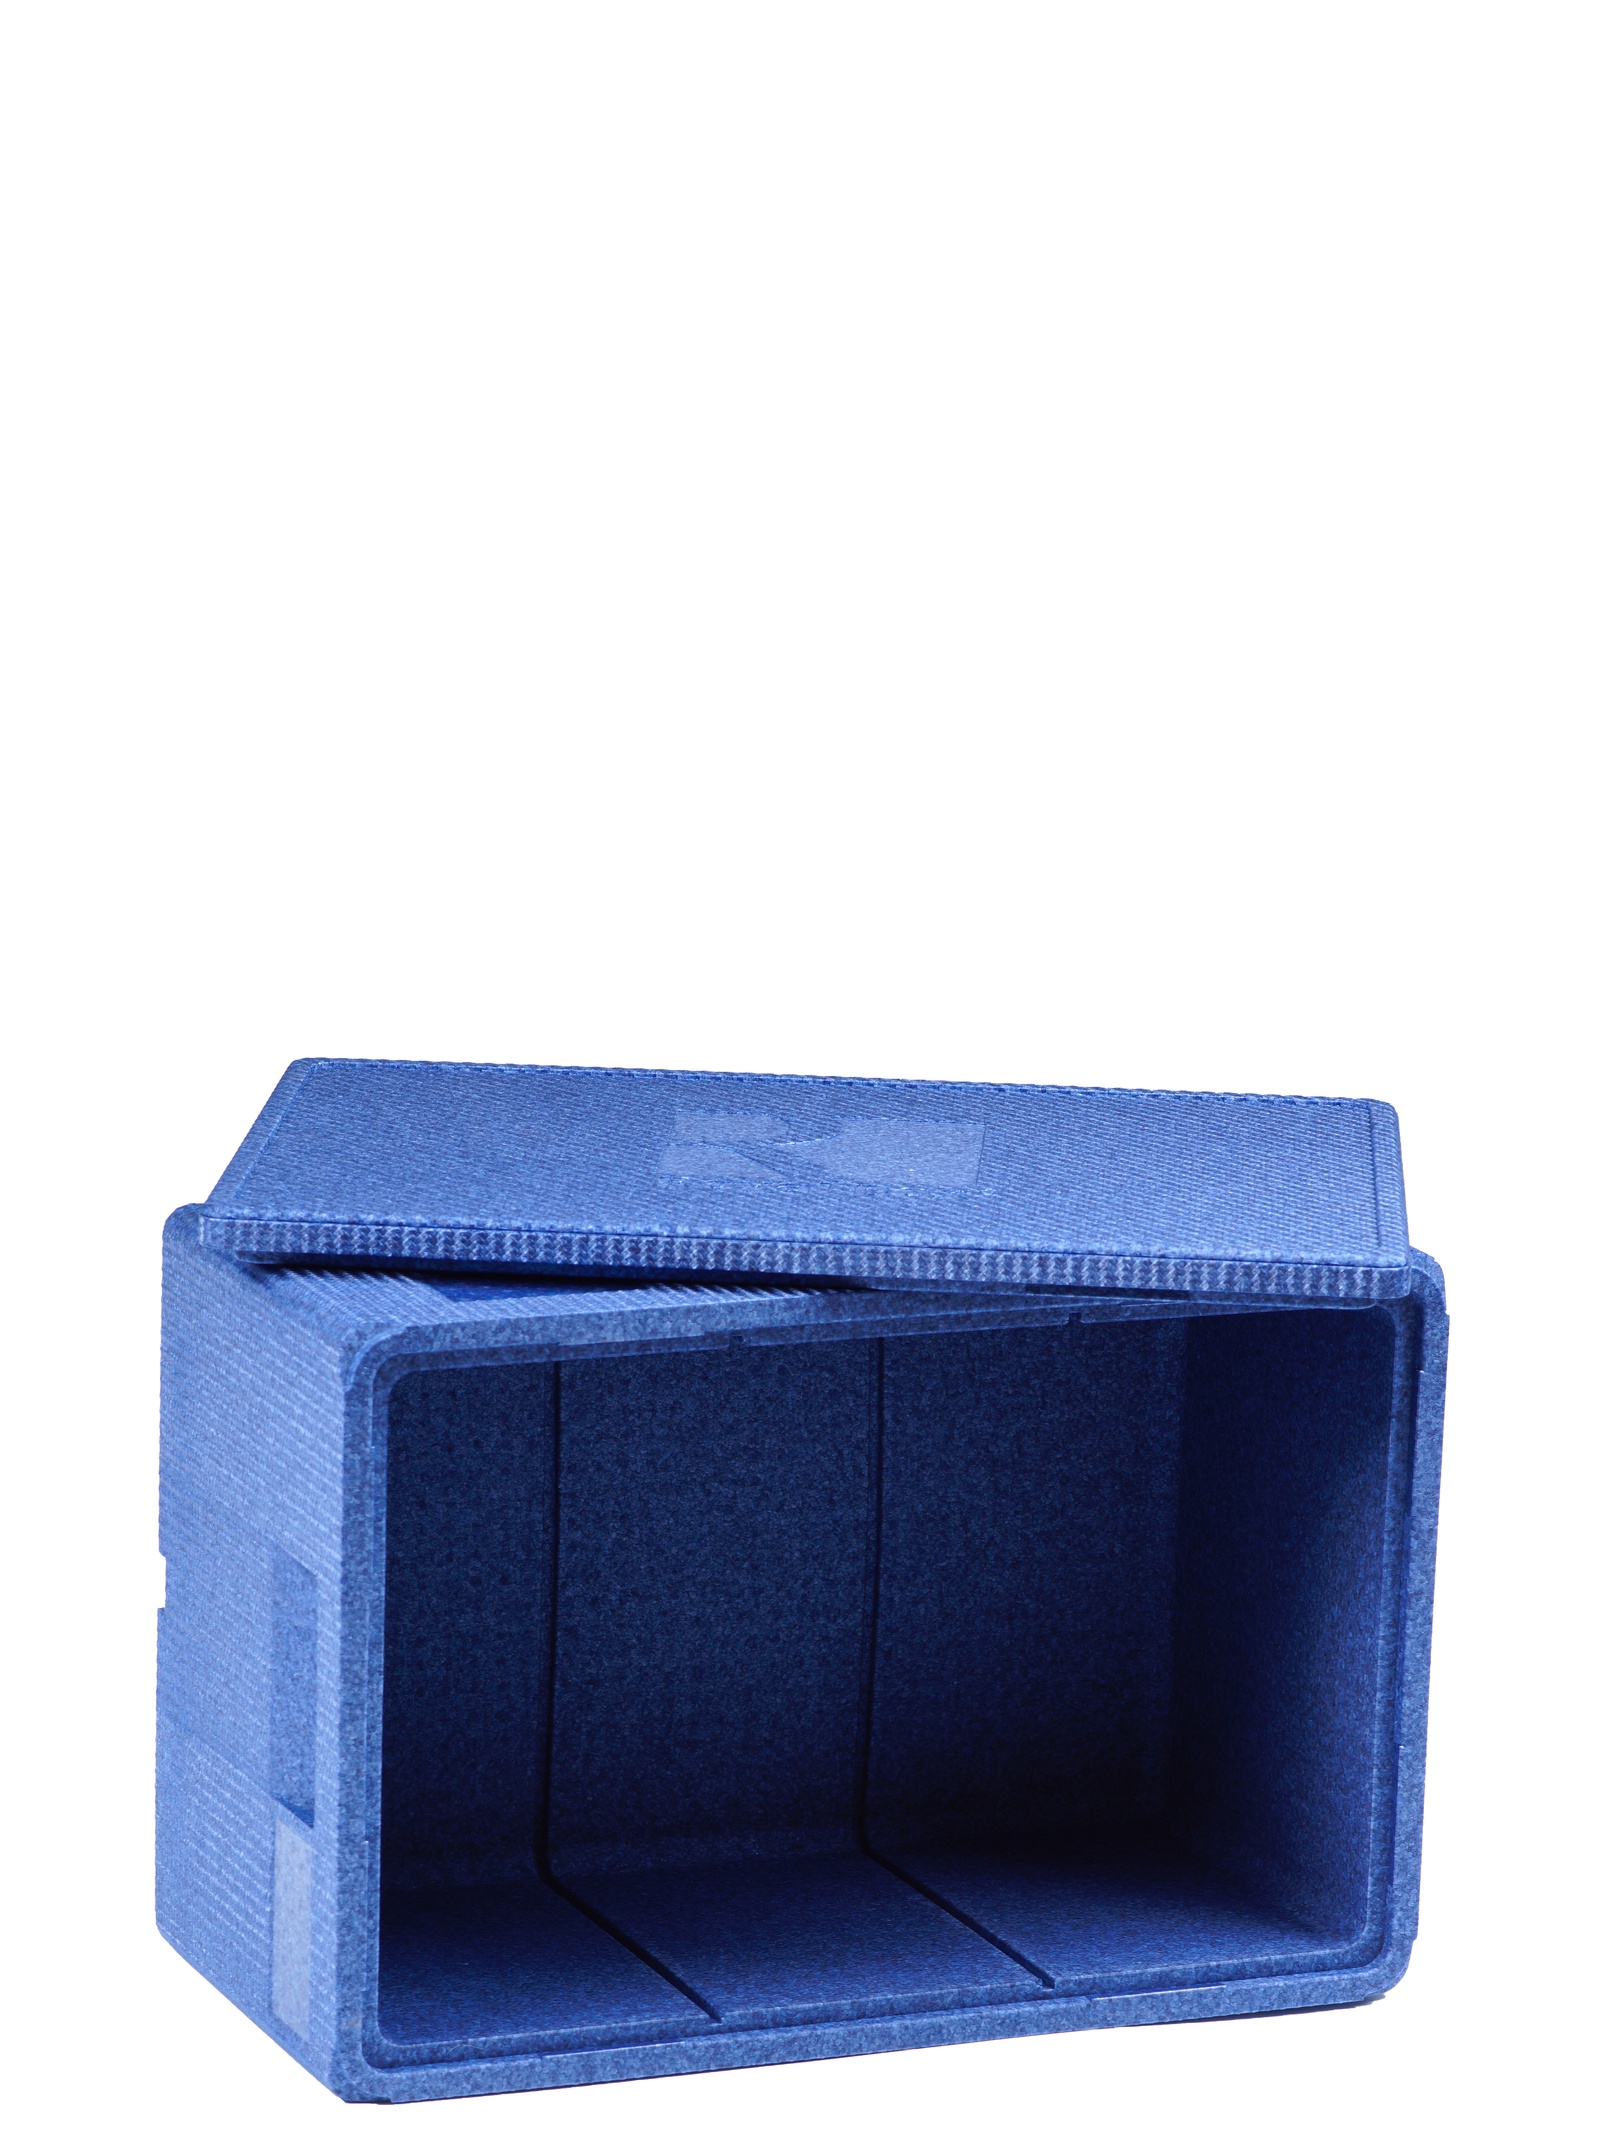 Изотермический контейнер Royal Box Unique синий, 23л